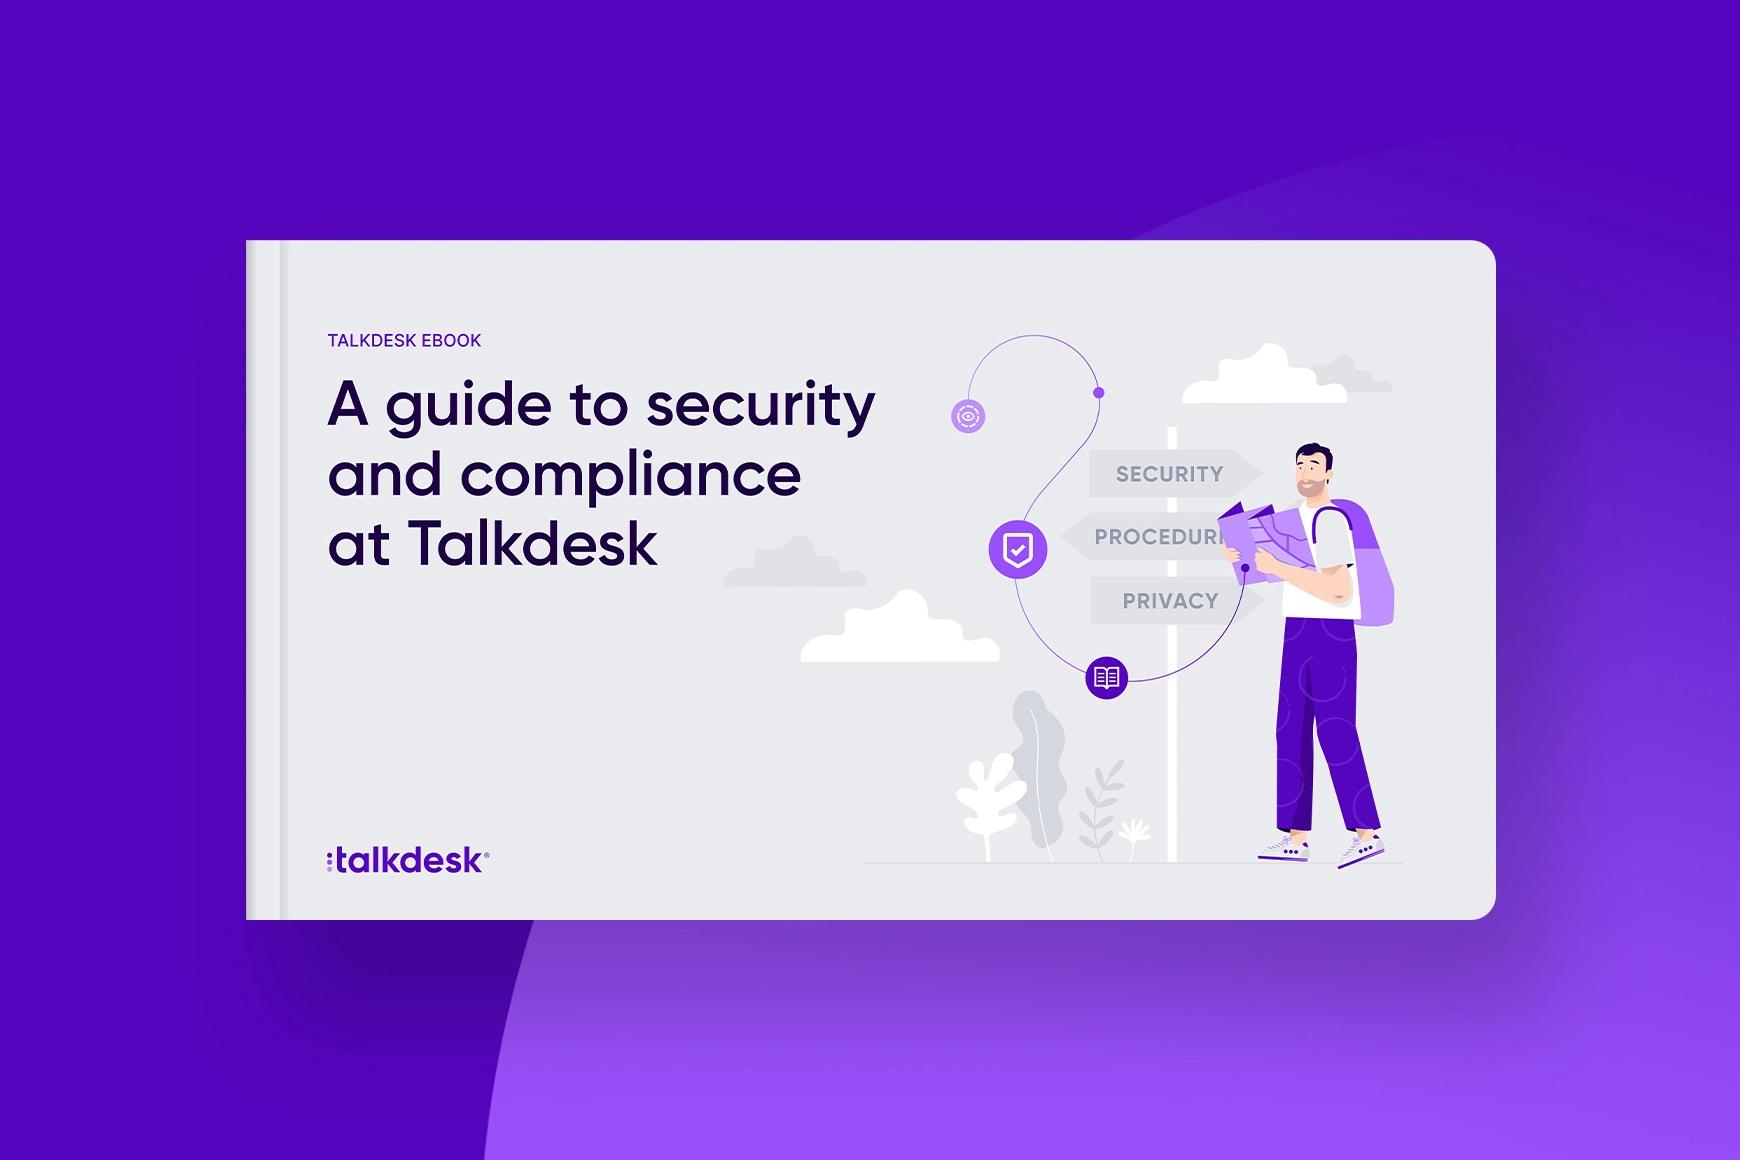 Um guia para segurança e conformidade na Talkdesk